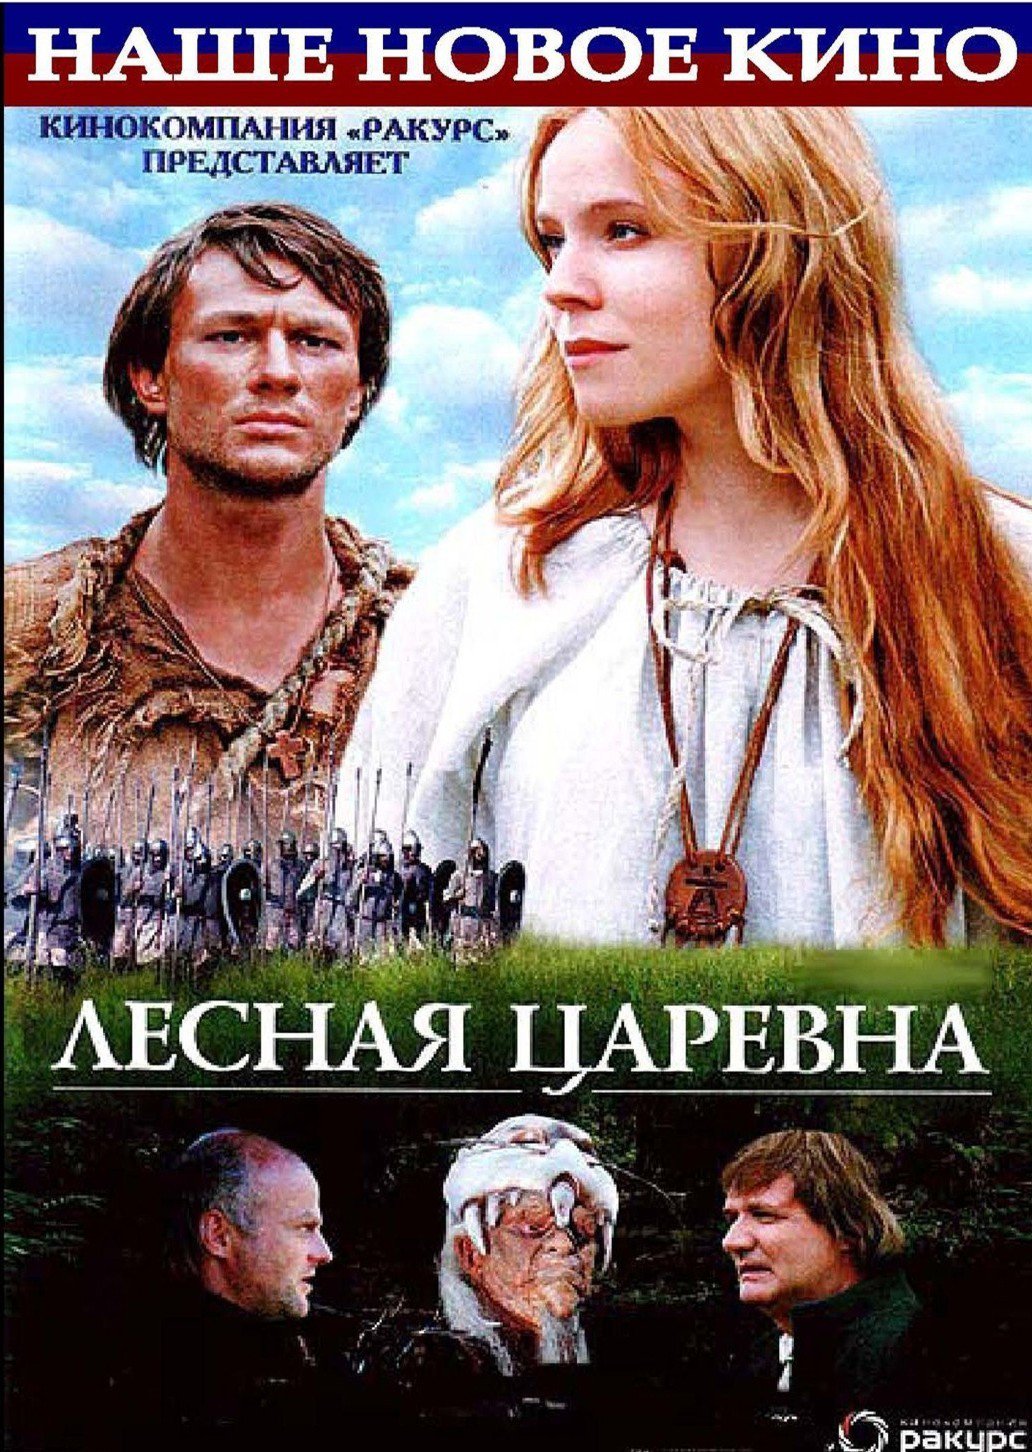 Lesnaya tsarevna (2005) Screenshot 1